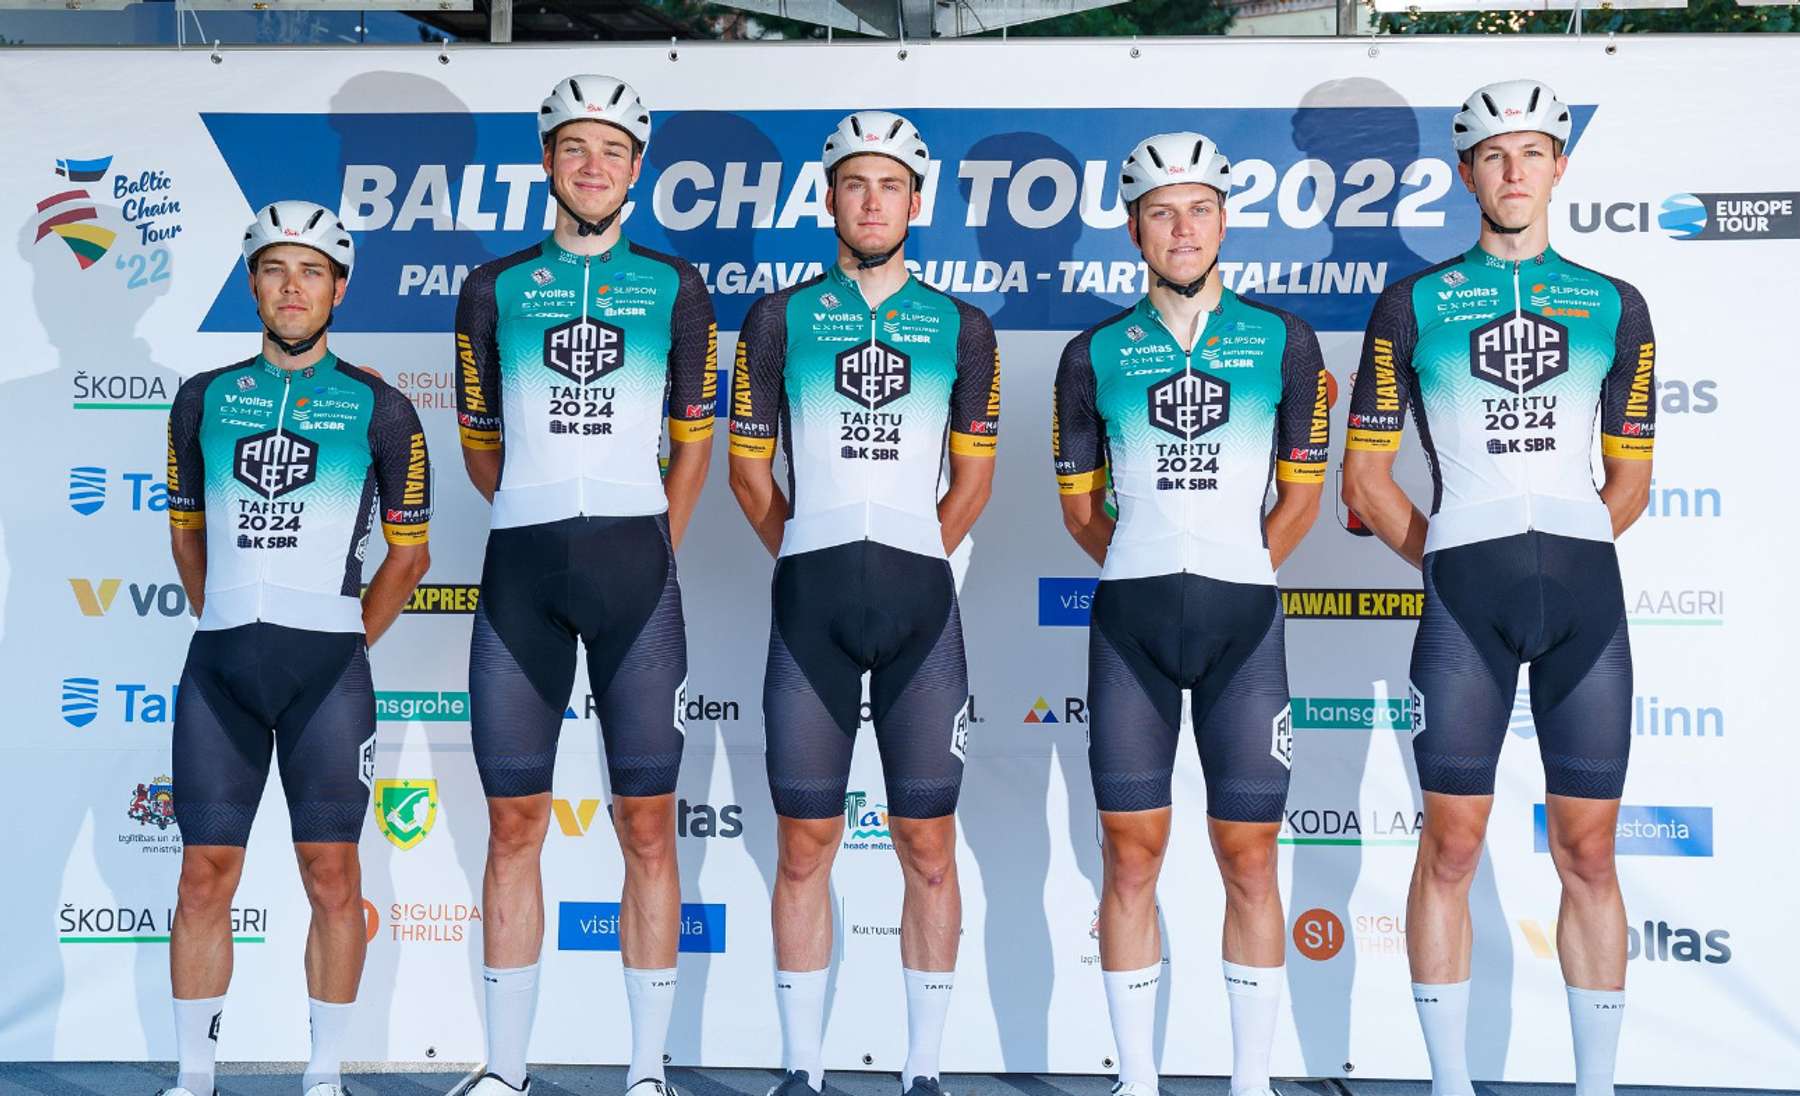 Tartu2024 Cycling Team meeskond Balti keti velotuuri 2022 meeskondade esitlusel.